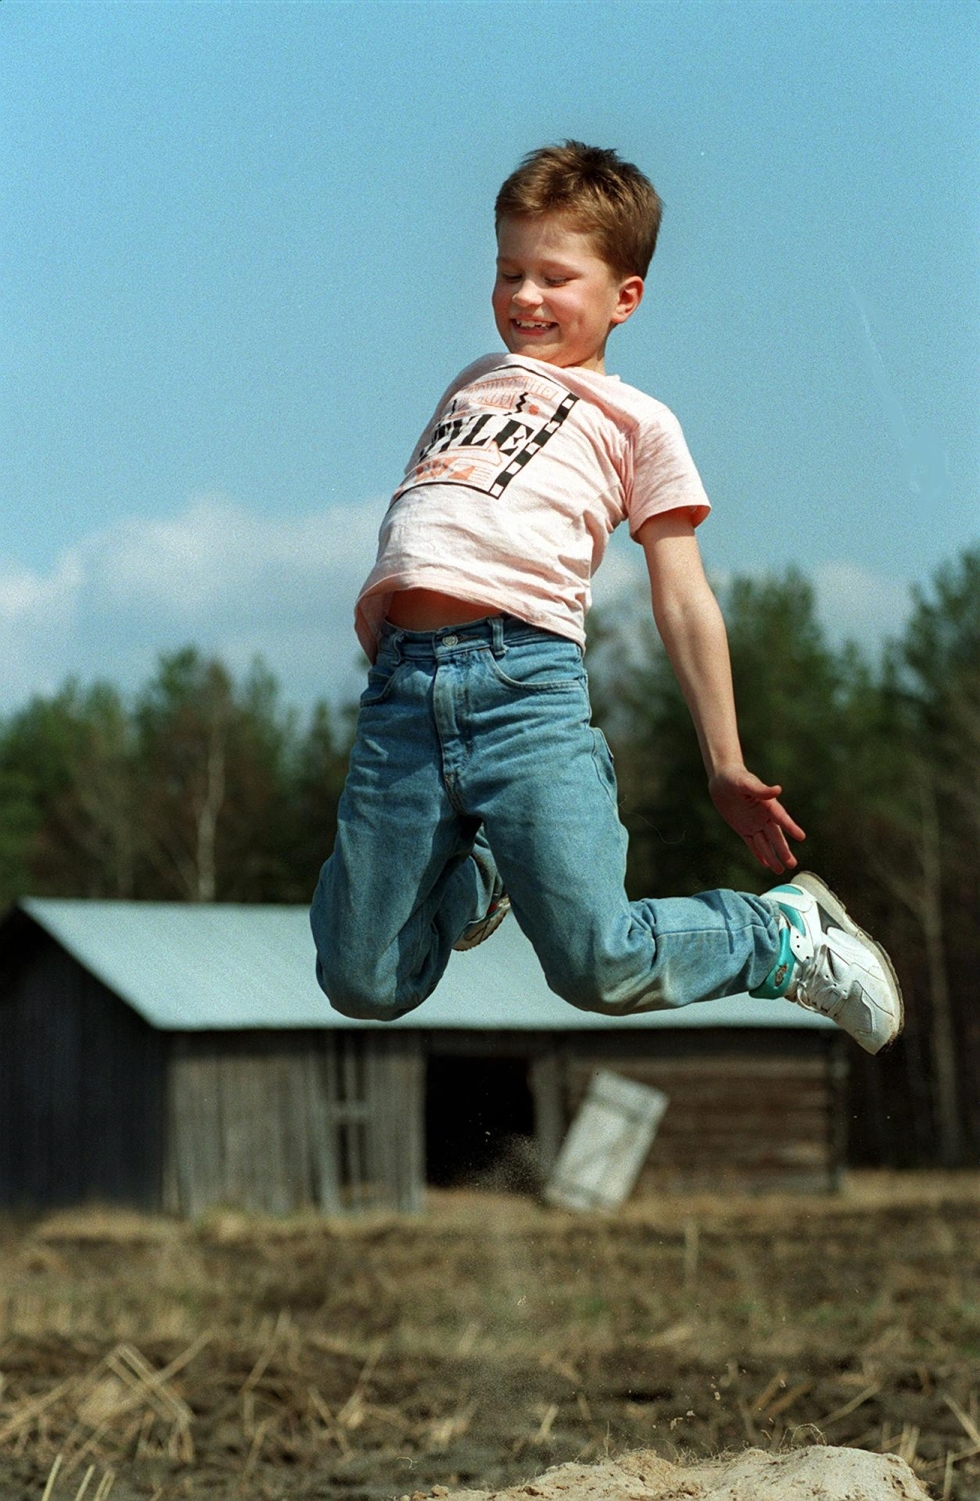 Tatu maalla. Karjalaisen toimittaja Hannu Jarva haastatteli kahdeksanvuotiaan joensuulaisnäyttelijän toukokuussa 1993. Kaihuan roolityön sisältänyt Markku Pölösen Onnen maa -elokuva oli ollut huhtikuussa ensi-illassa.